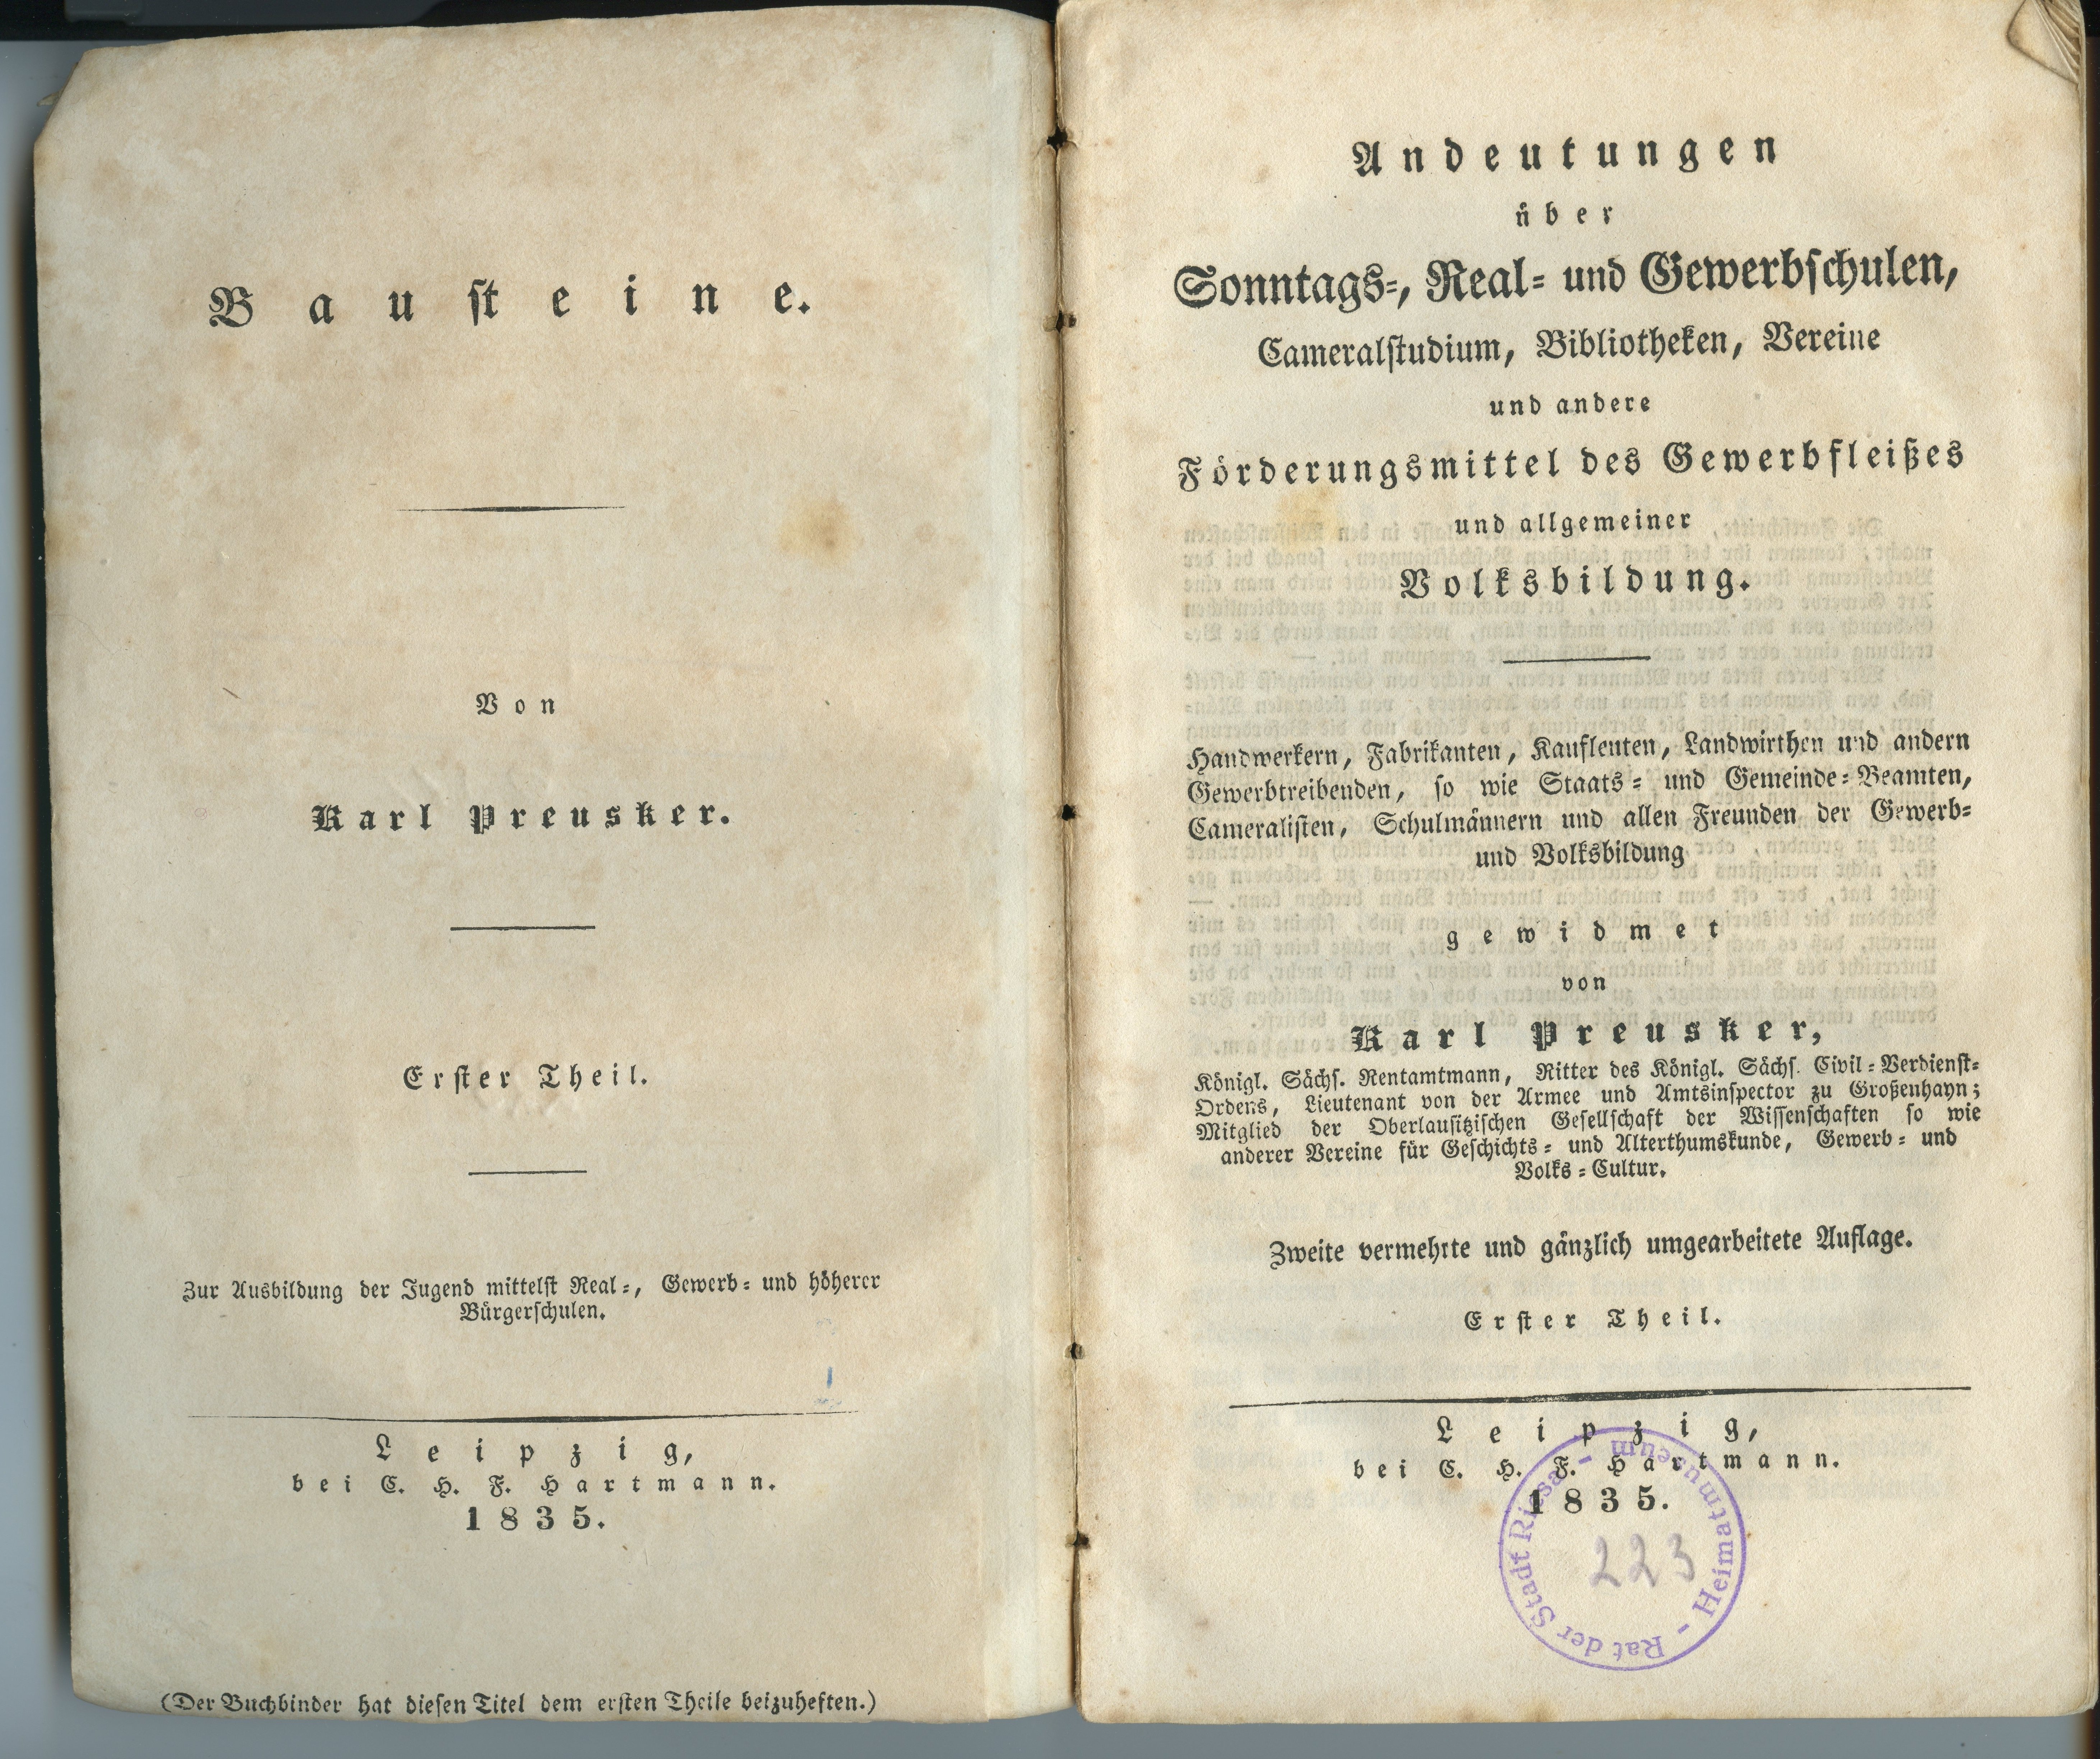 Preusker, Karl: Andeutungen über Sonntags-, Real- und Gewerbschulen [...], Teil 1, 2. Auflage 1835 (Museum Alte Lateinschule CC BY-NC-SA)